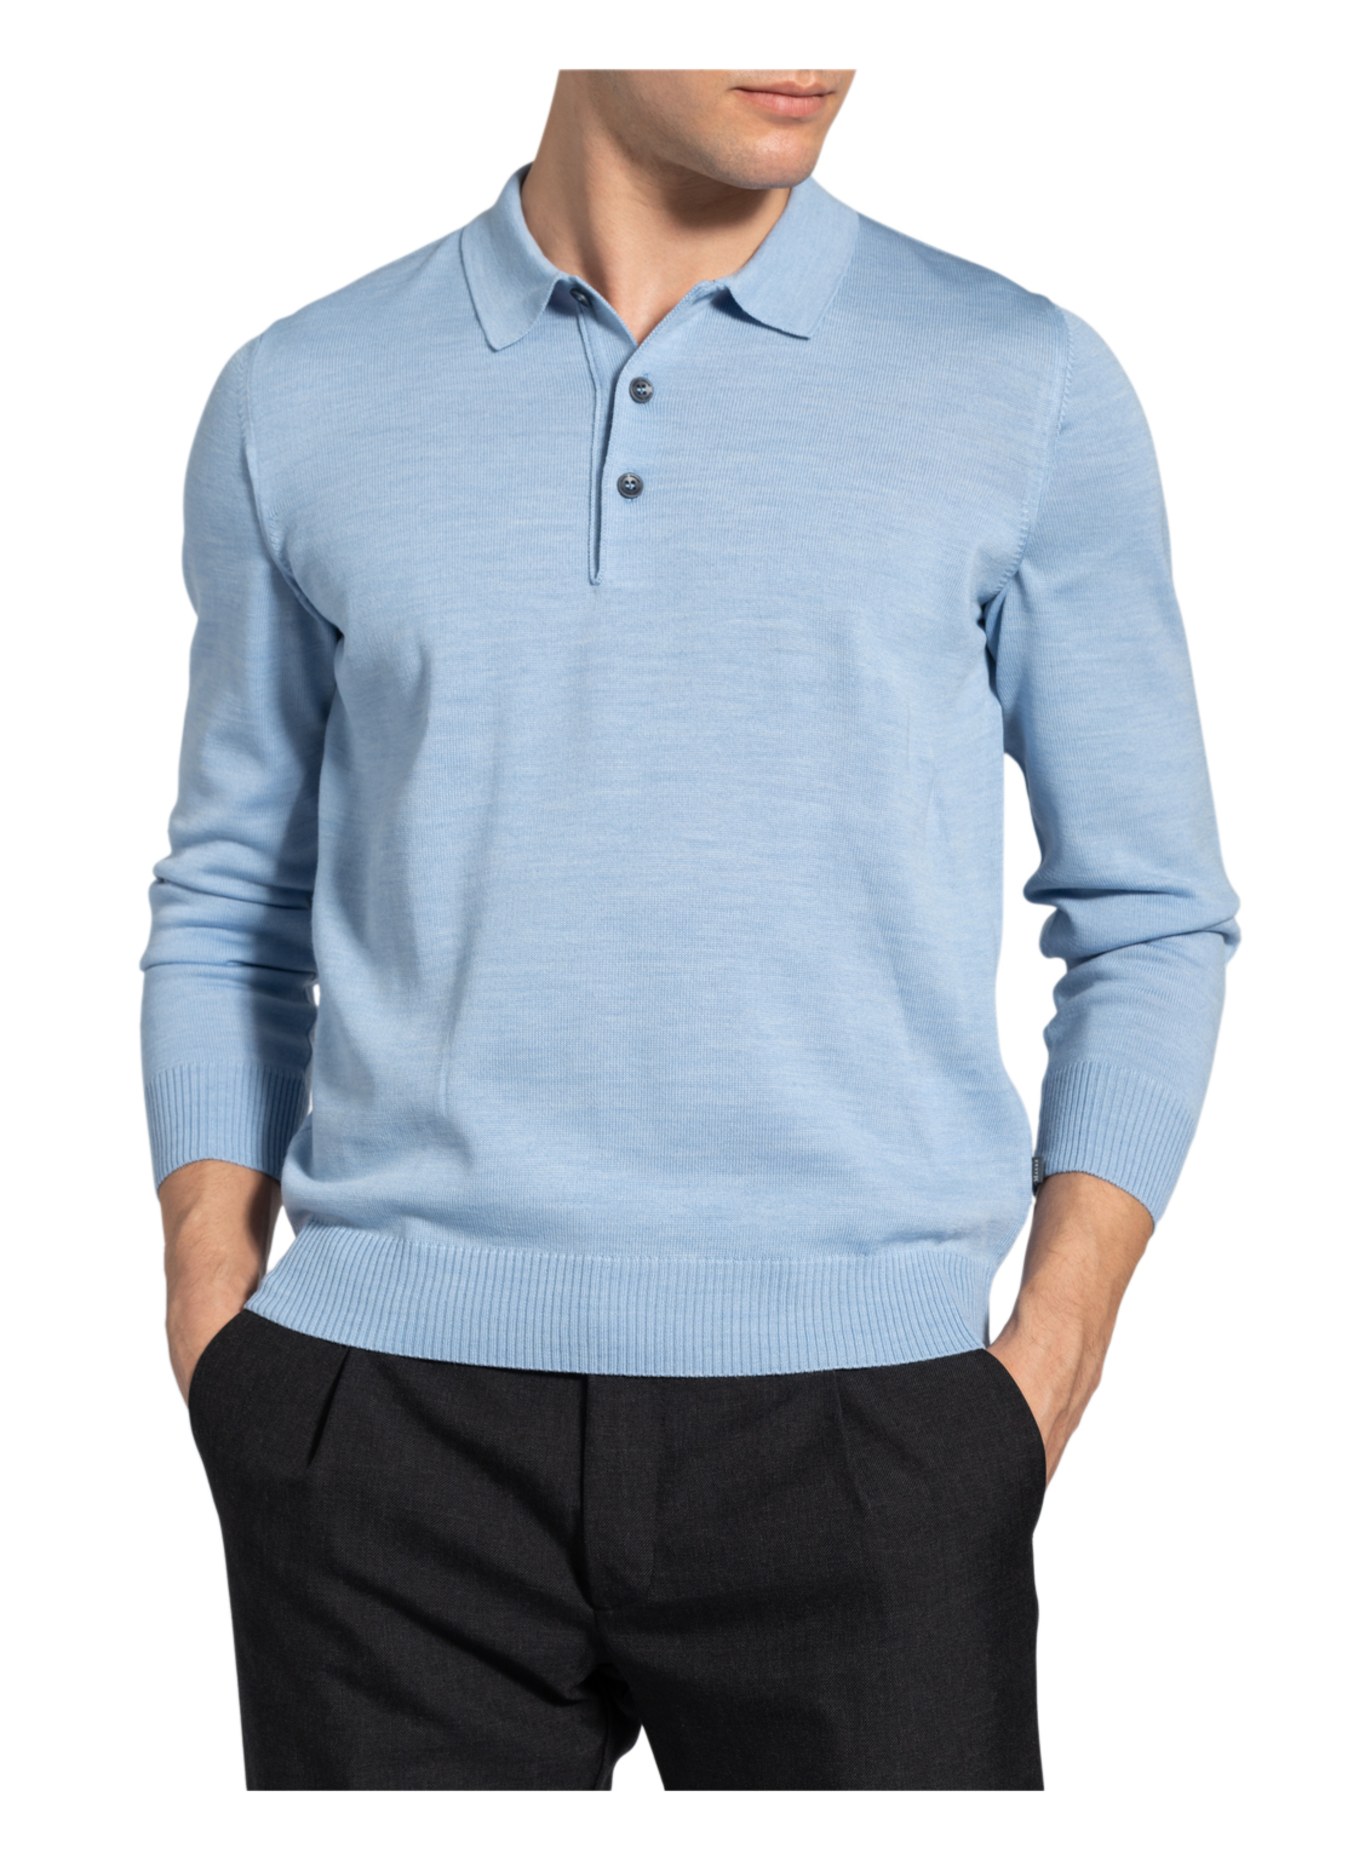 MAERZ MUENCHEN Pullover mit Polokragen, Farbe: HELLBLAU (Bild 4)